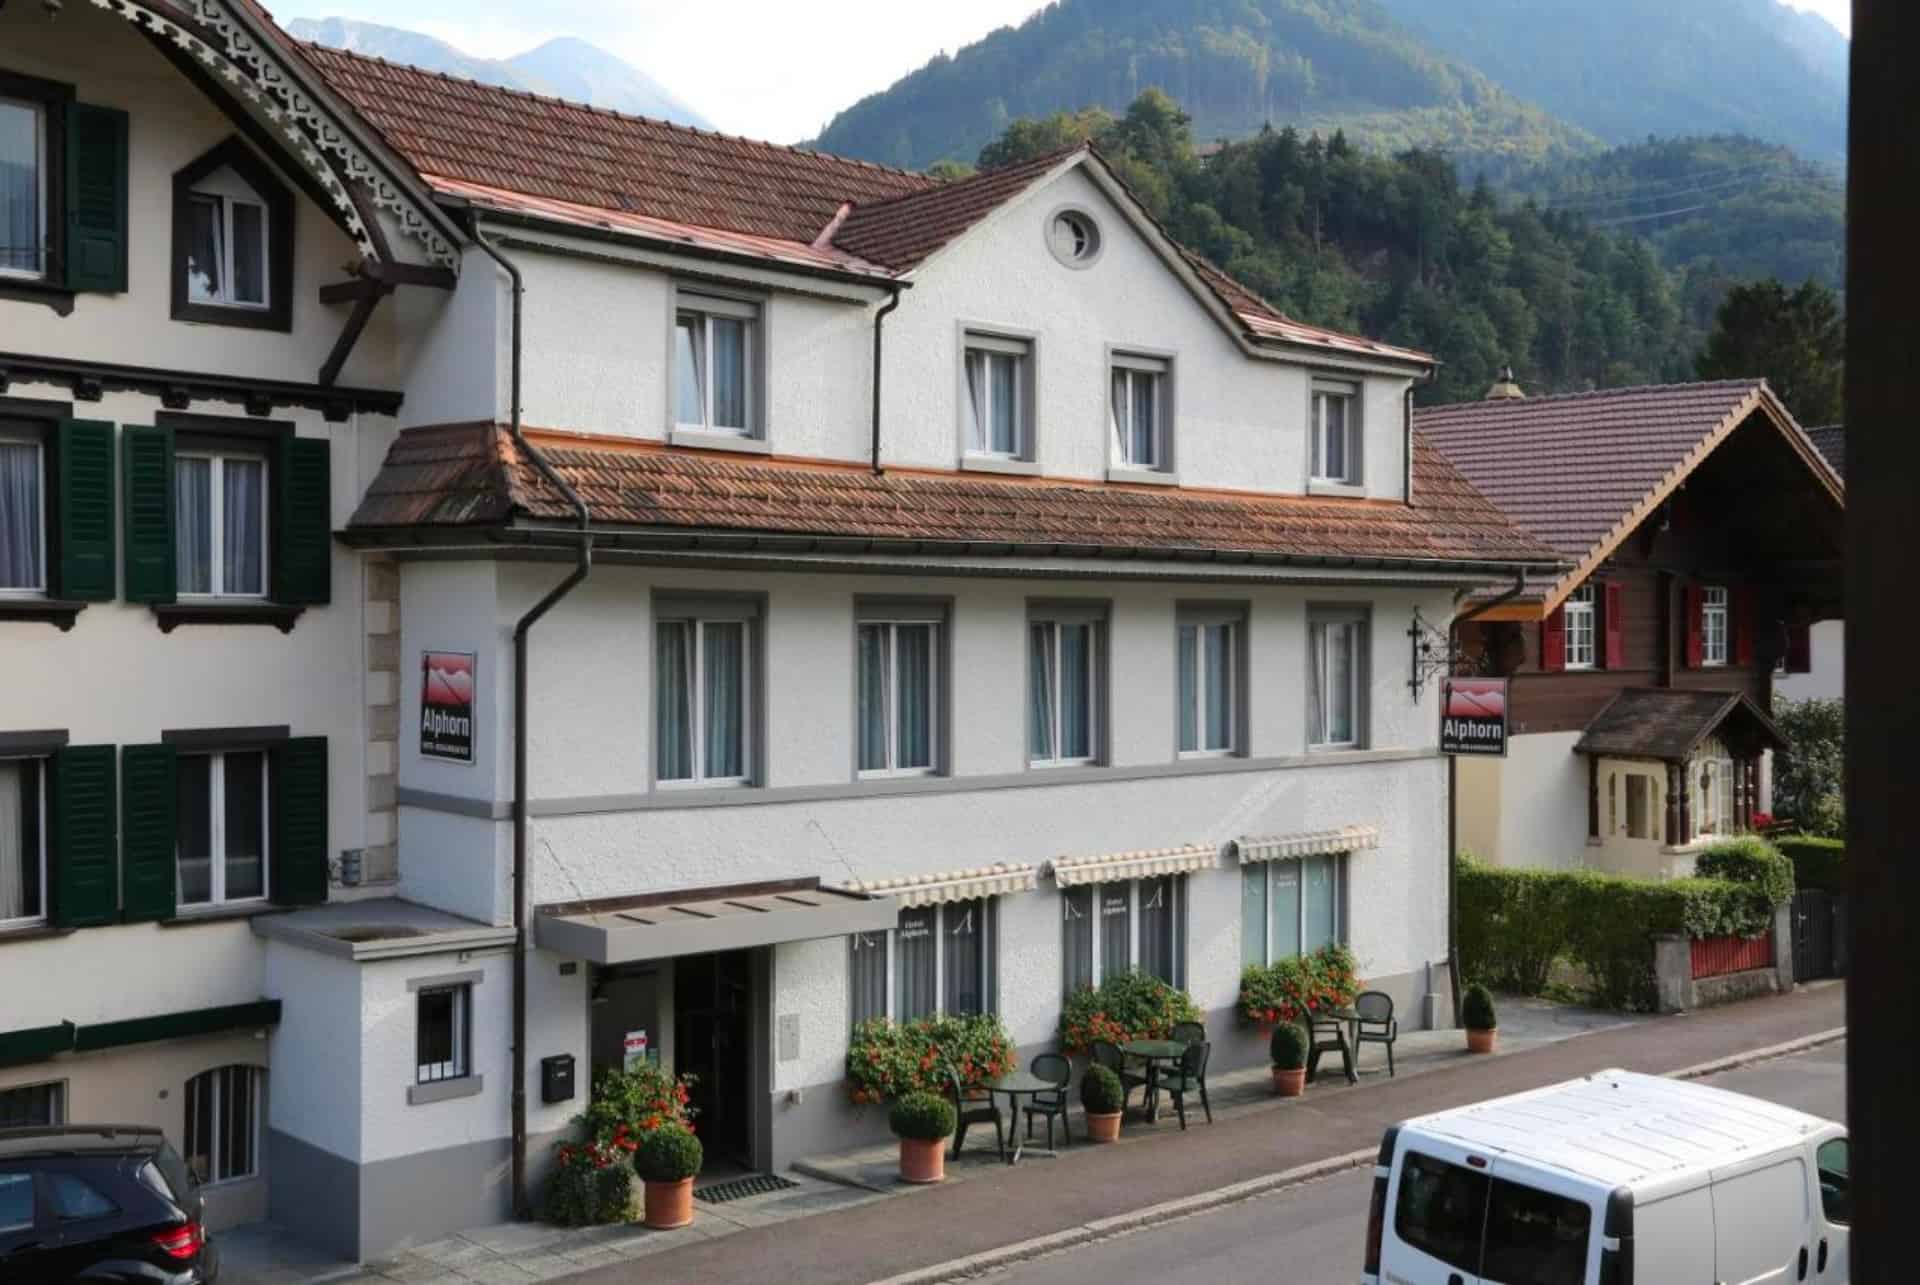 hotel alphorn suisse